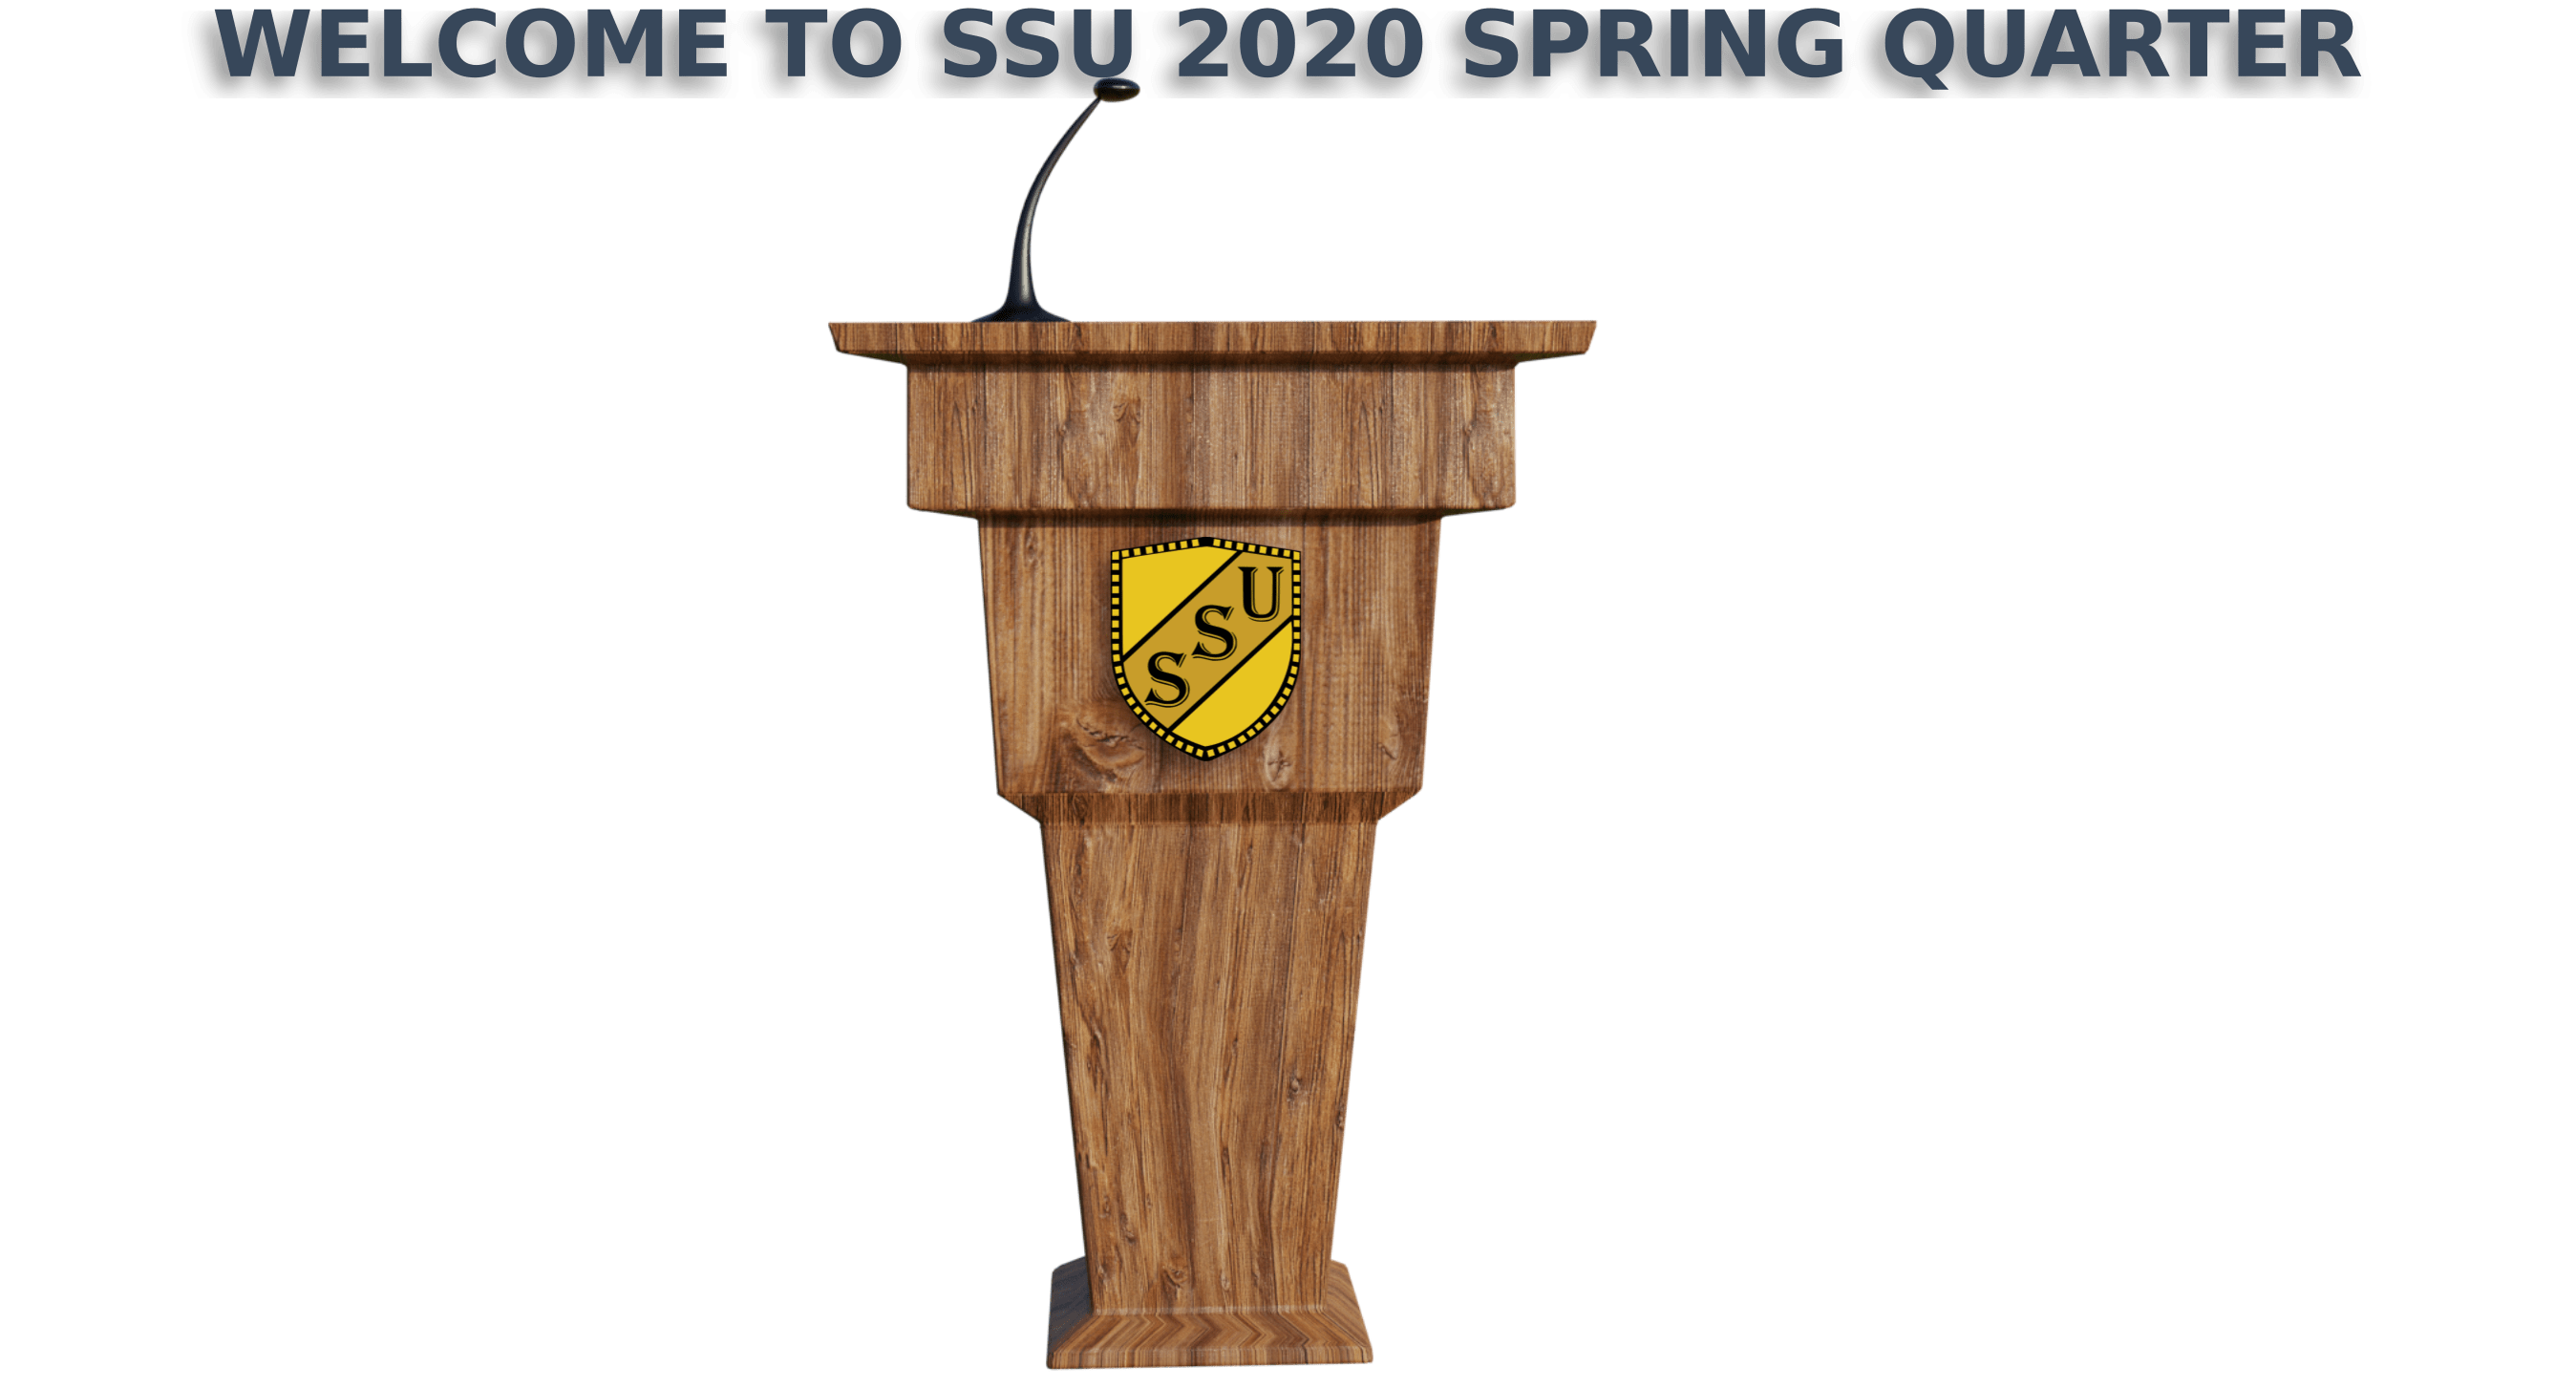 Welcome to SSU 2020 Spring Quarter